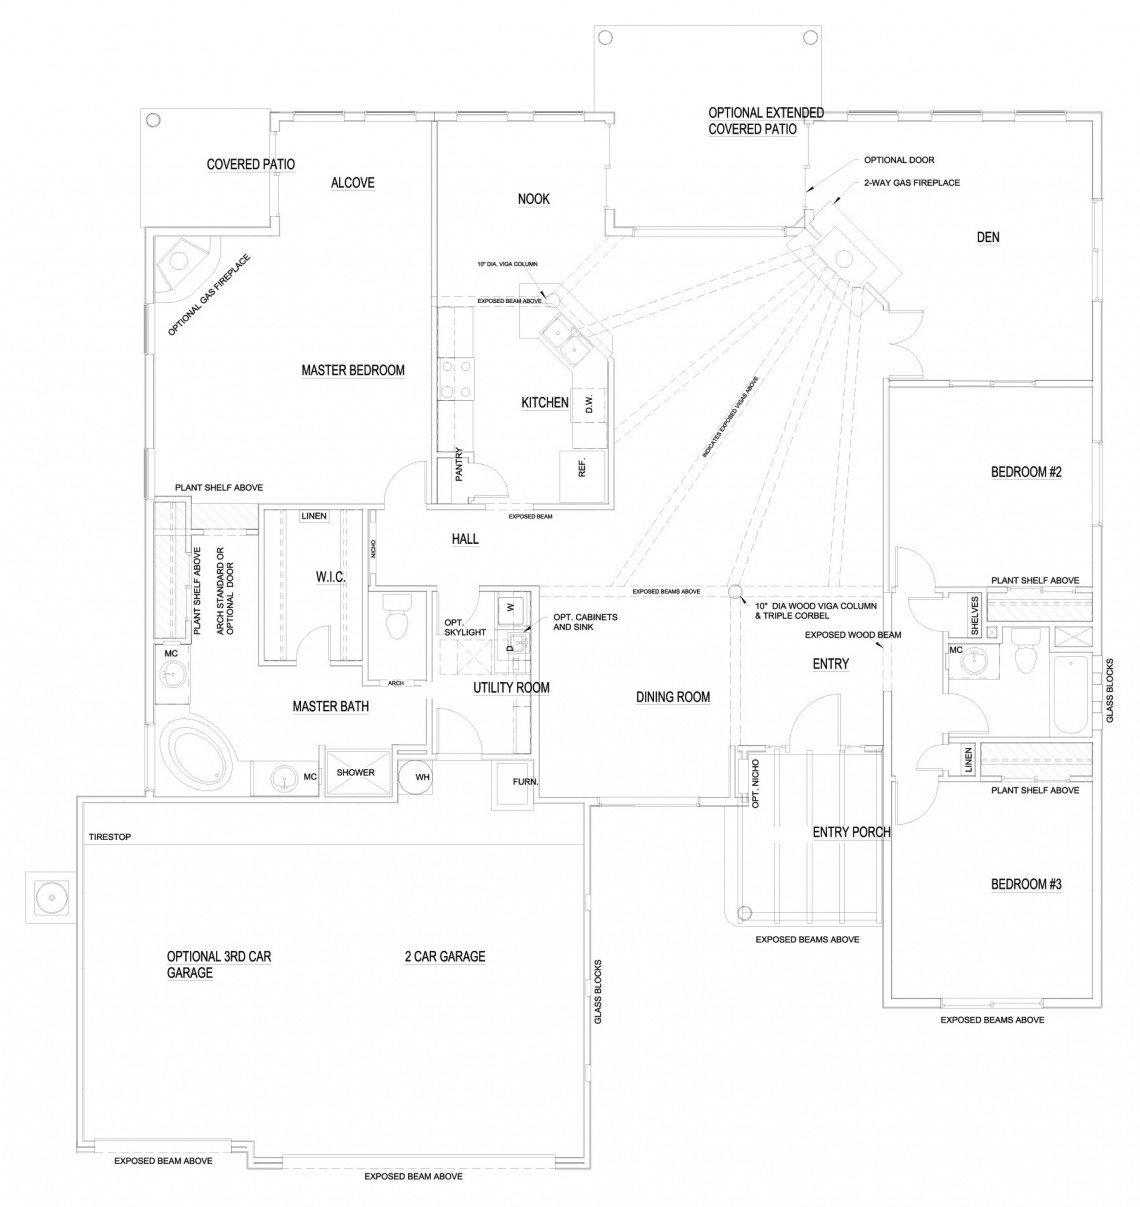 Kachina Floorplan - 2,246 sq ft